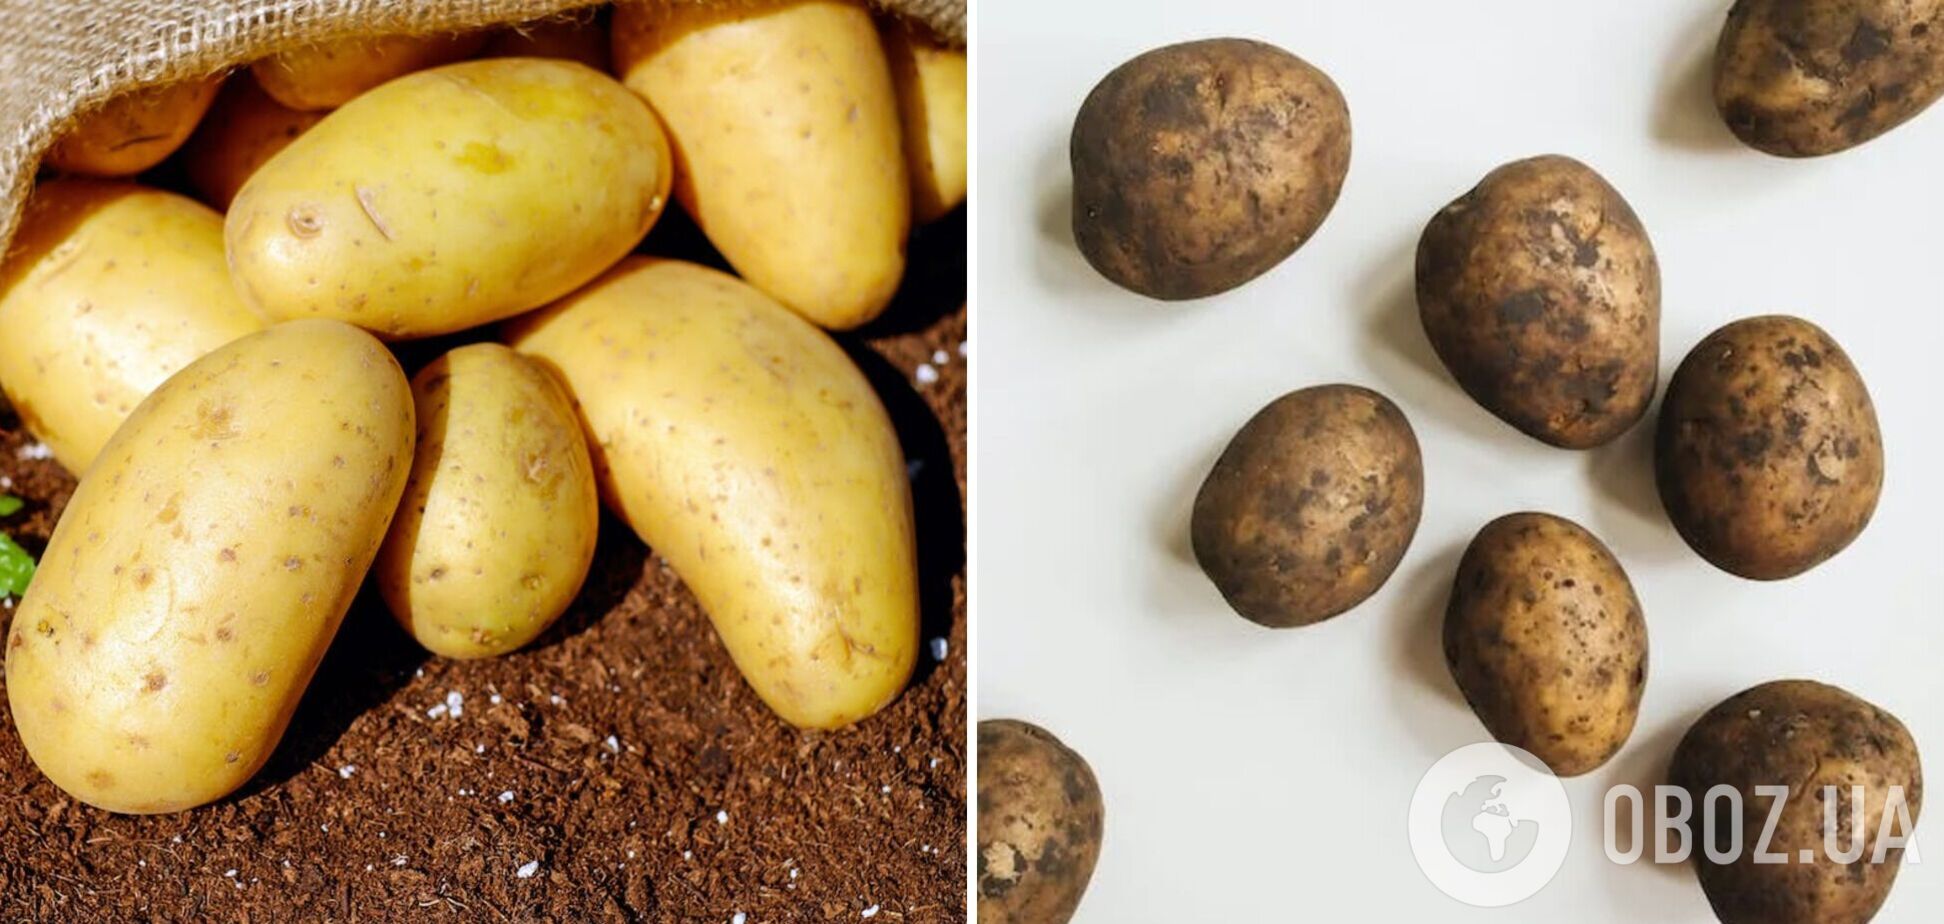 Як зберігати картоплю у квартирі взимку: перевірені способи